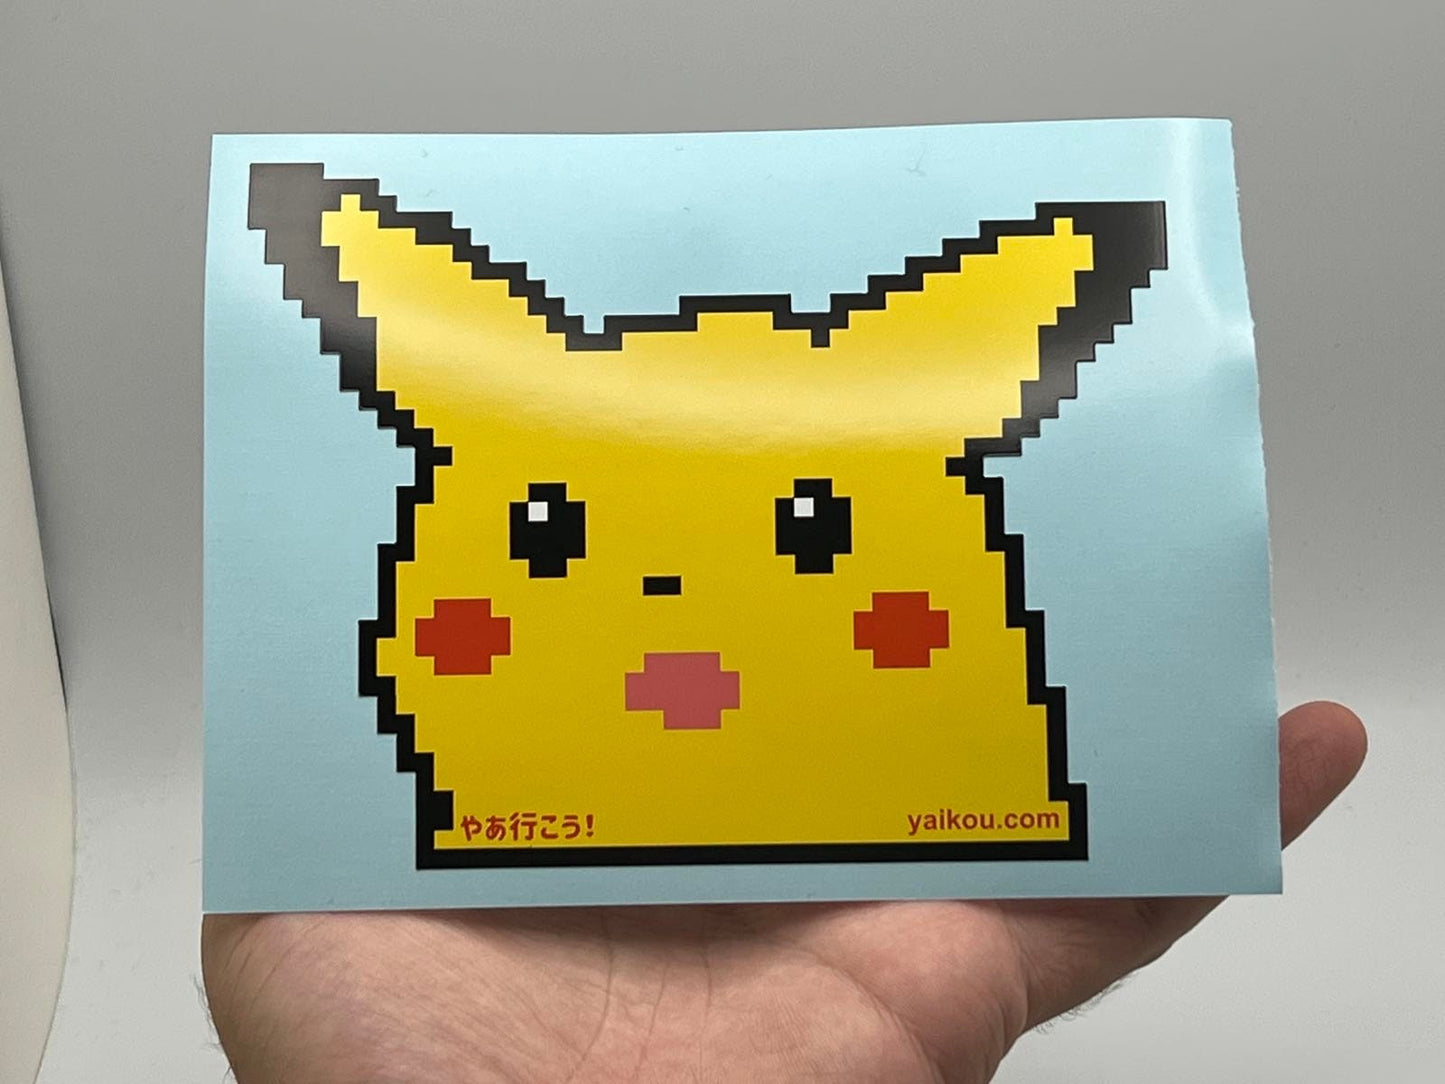 Surprised Pixelchu Sticker [8-bit Memes]  - For car, laptop, handheld console